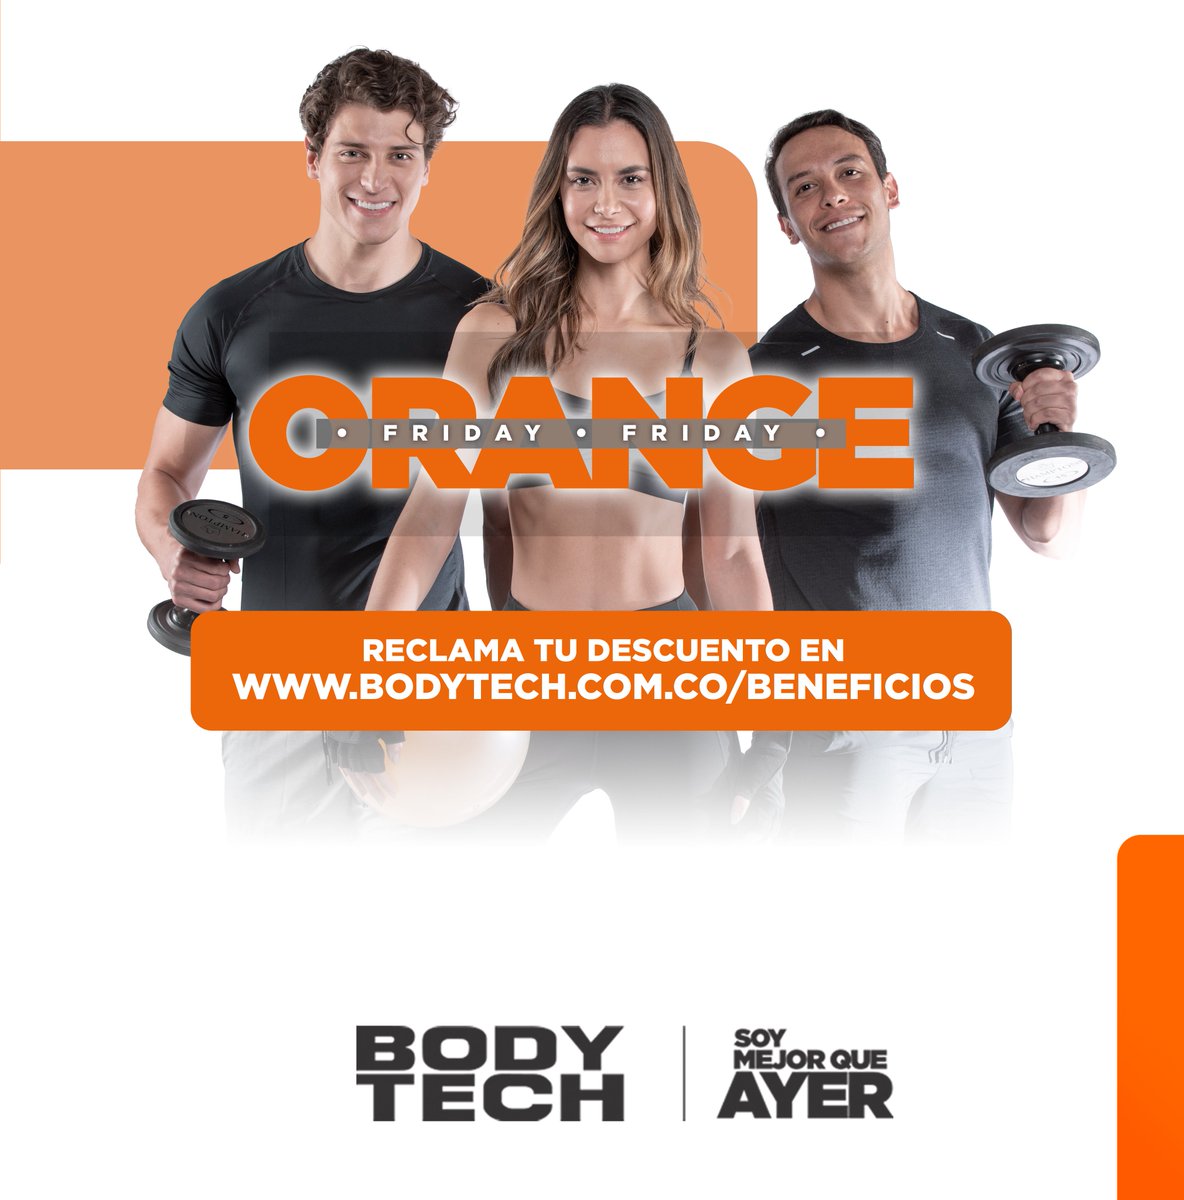 ¡Mañana es el Orange Day y es hora de disfrutar al máximo los beneficios de ser parte de la familia Bodytech! 🧡 Aprovecha los descuentos exclusivos aquí 👇bodytech.com.co/beneficios